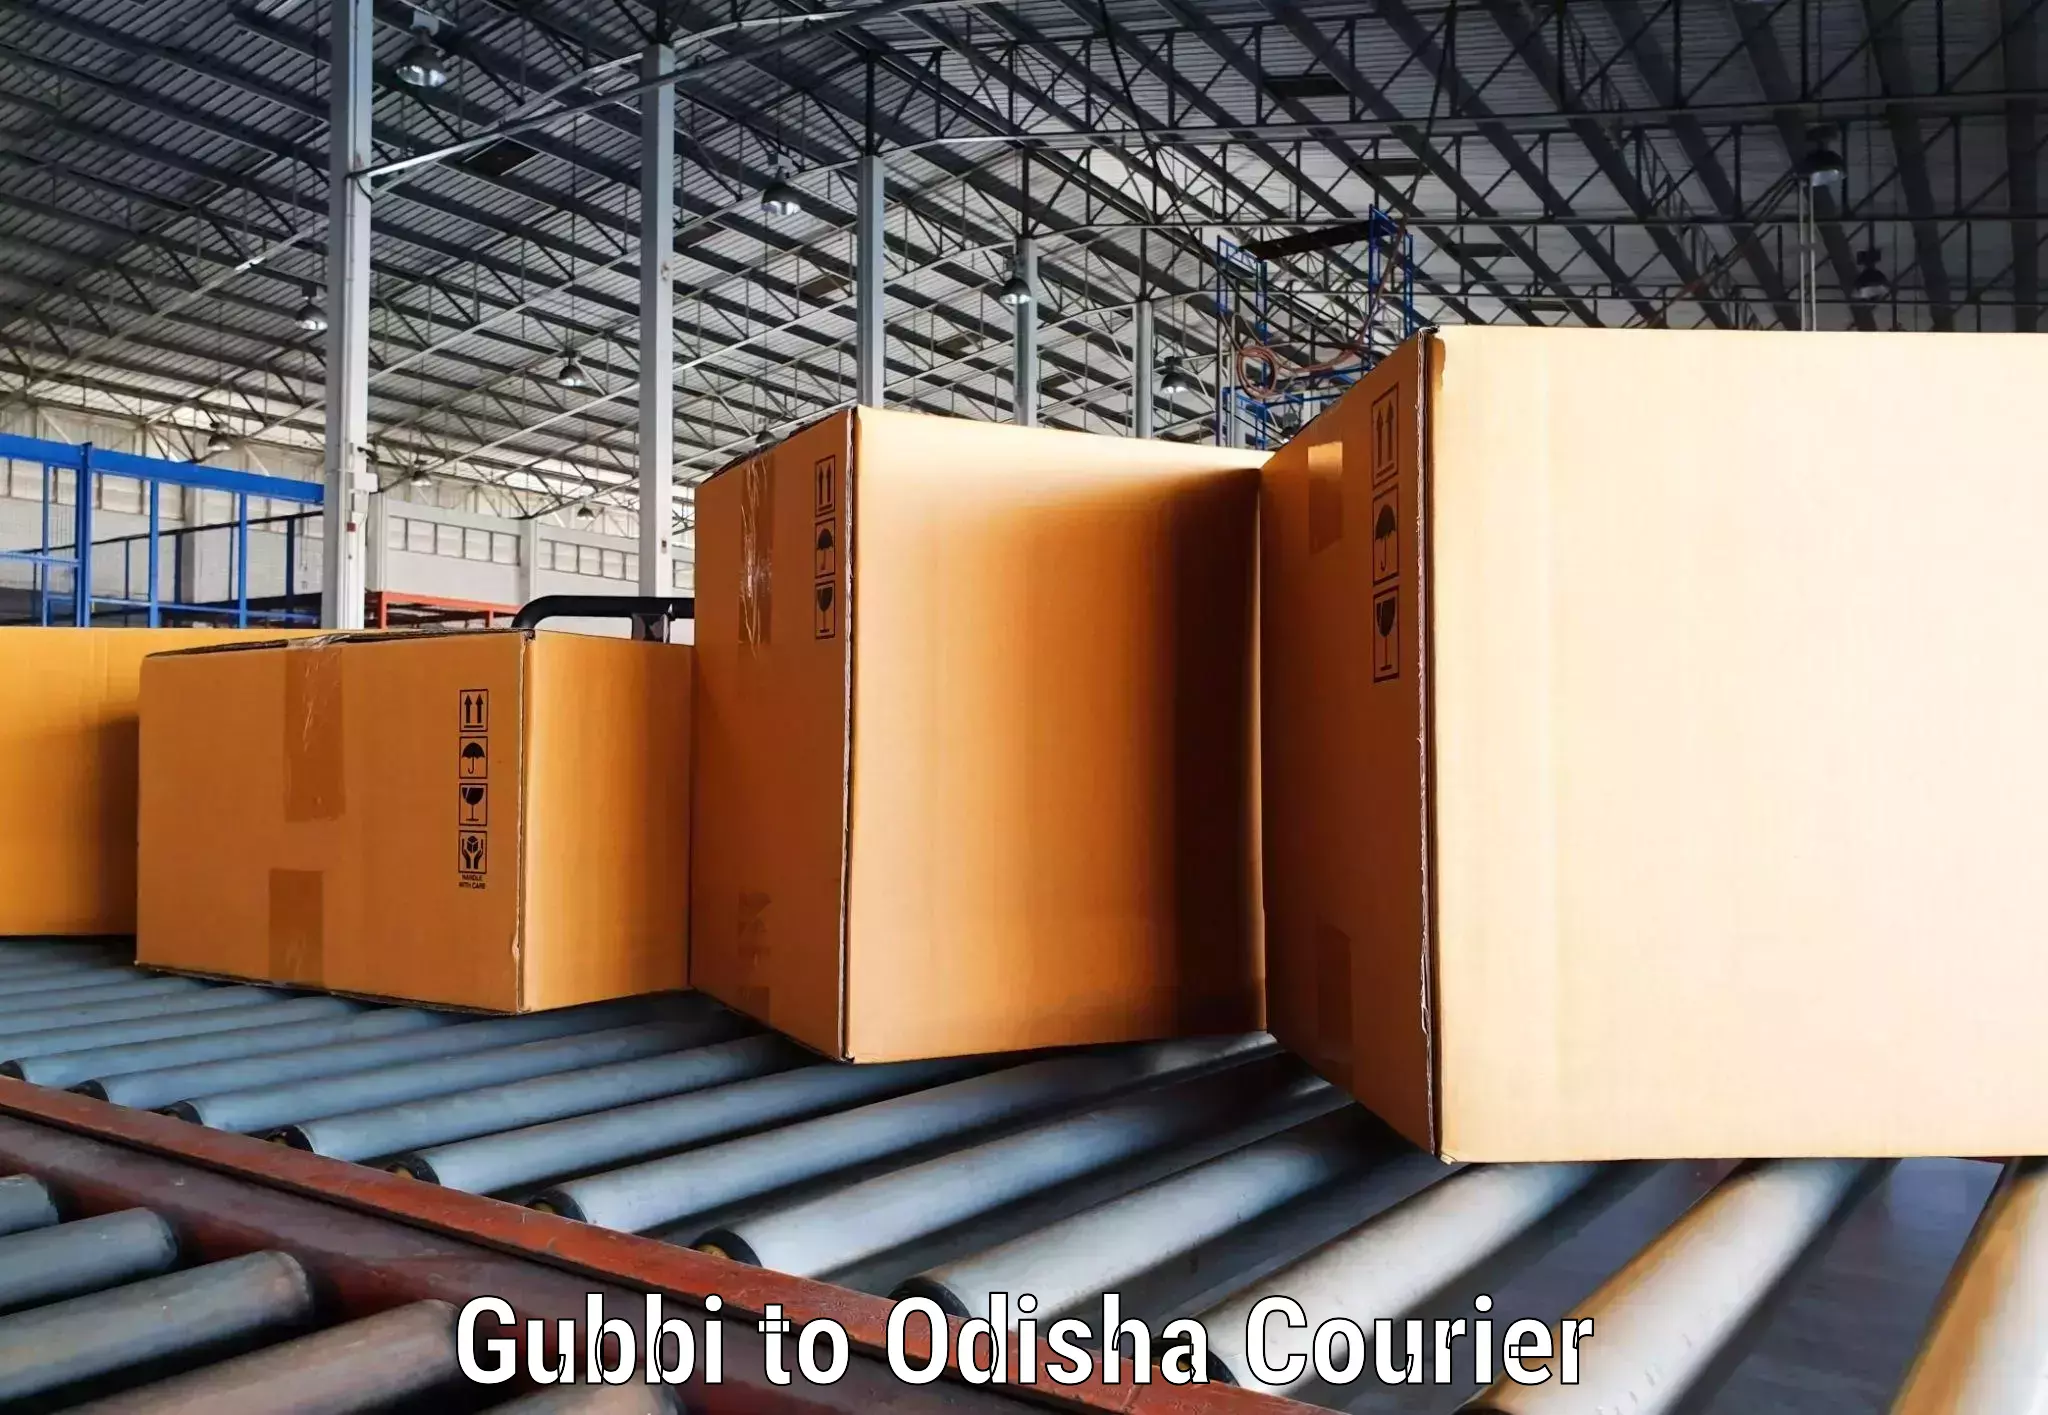 High-priority parcel service Gubbi to Kalimela